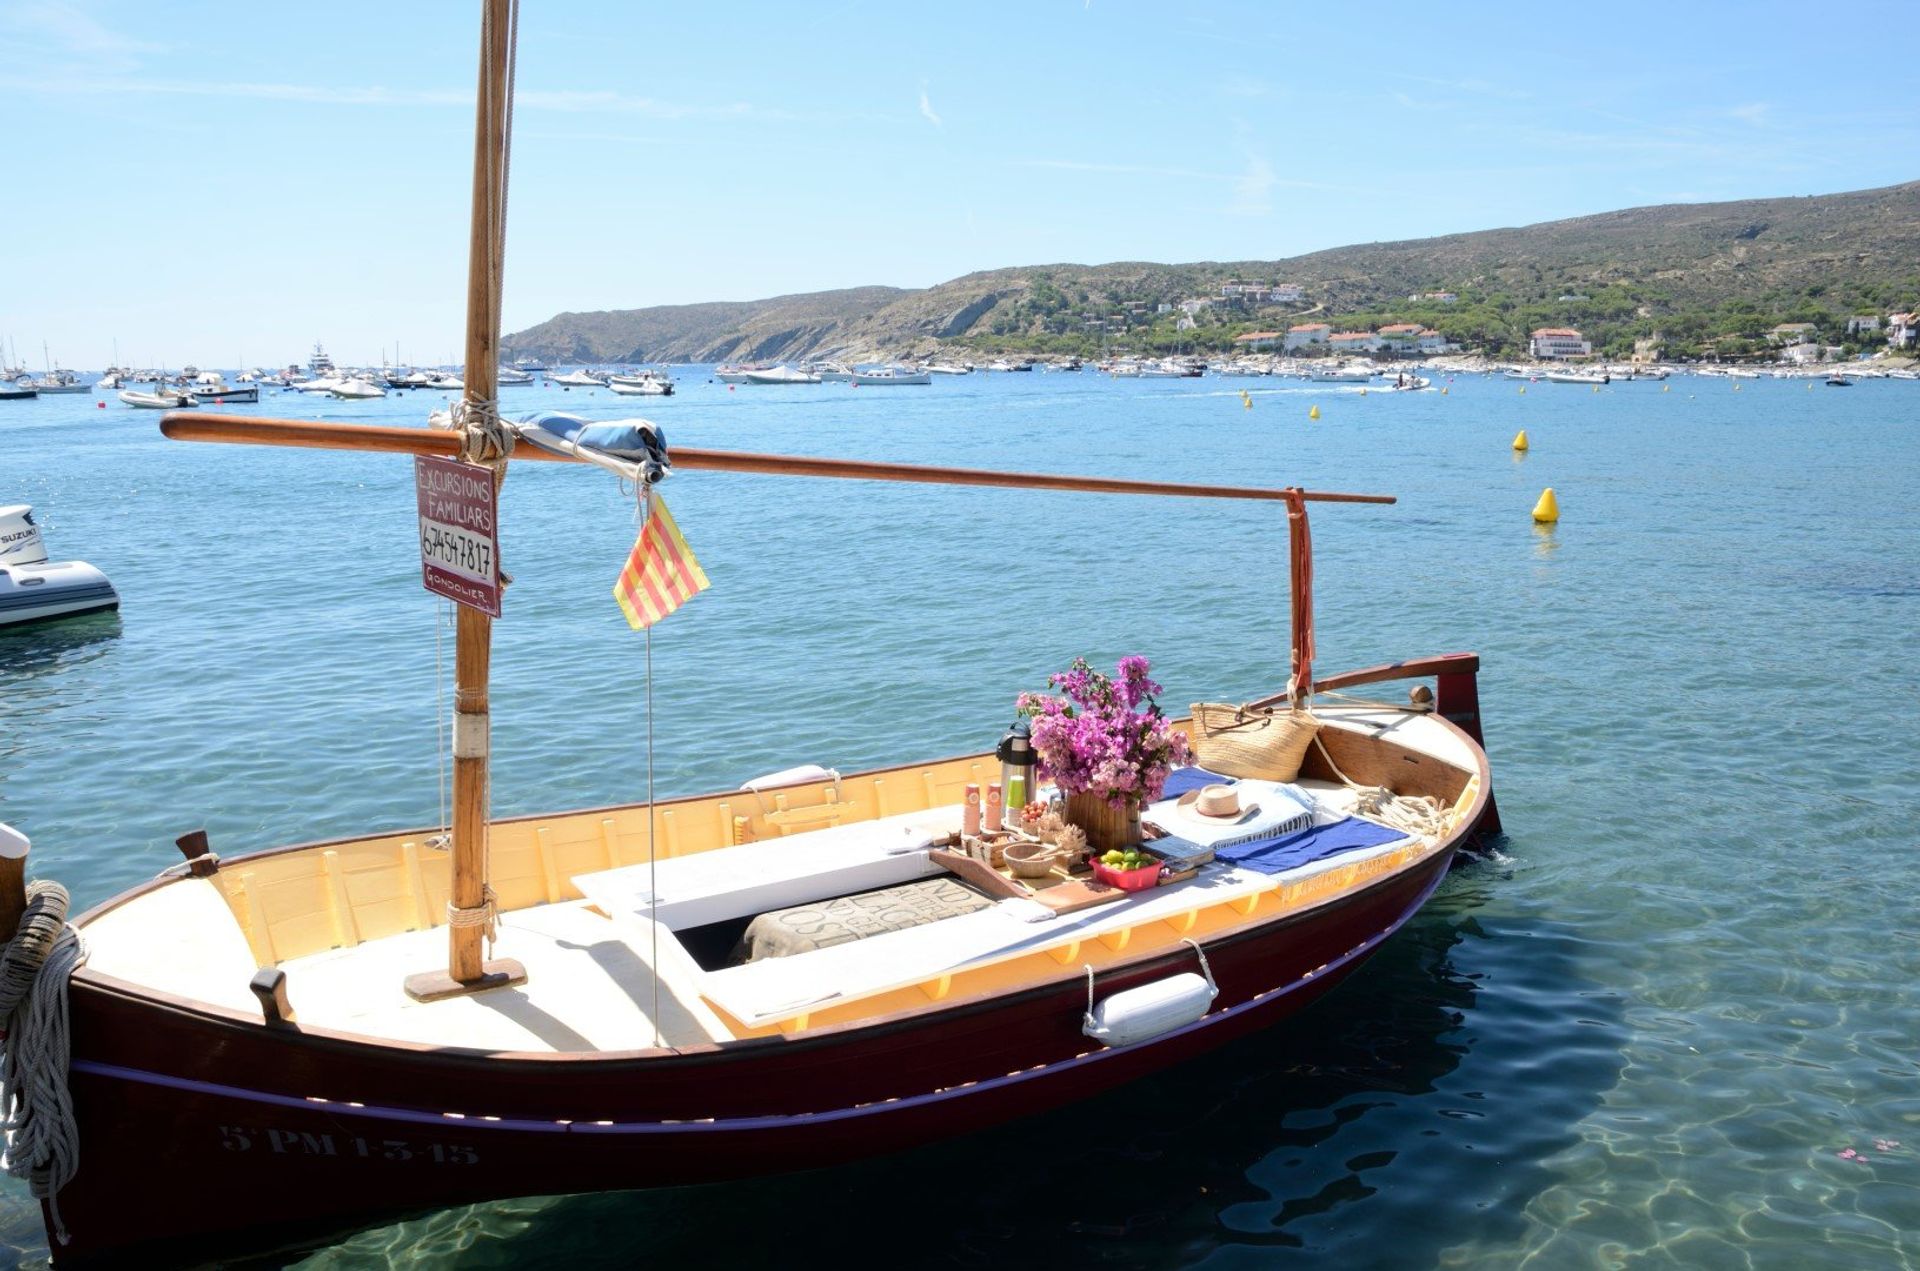 One of the many tourist boats at Cadaqués, near Cap de Creus, northeast Catalonia